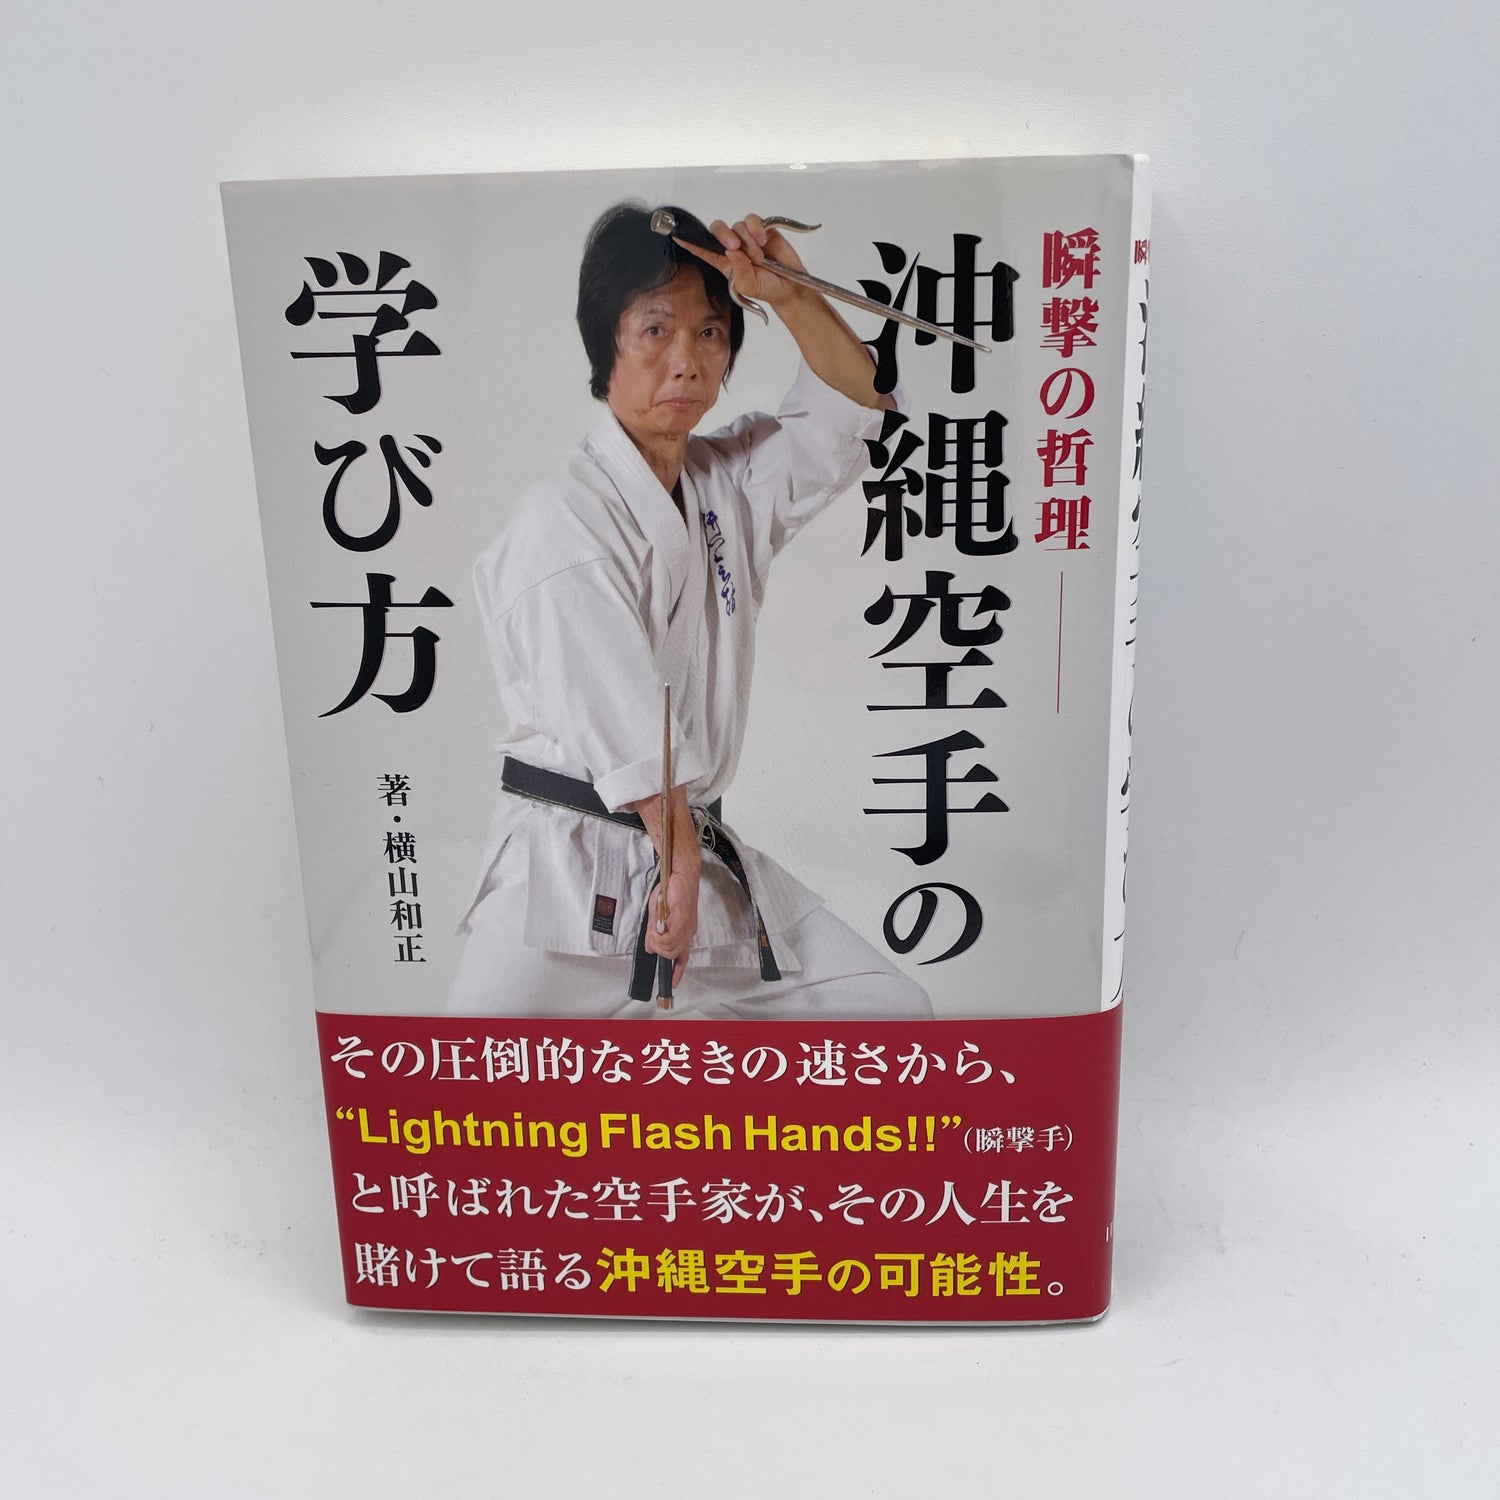 How to Learn Okinawan Karate Book by Kazumasa Yokoyama